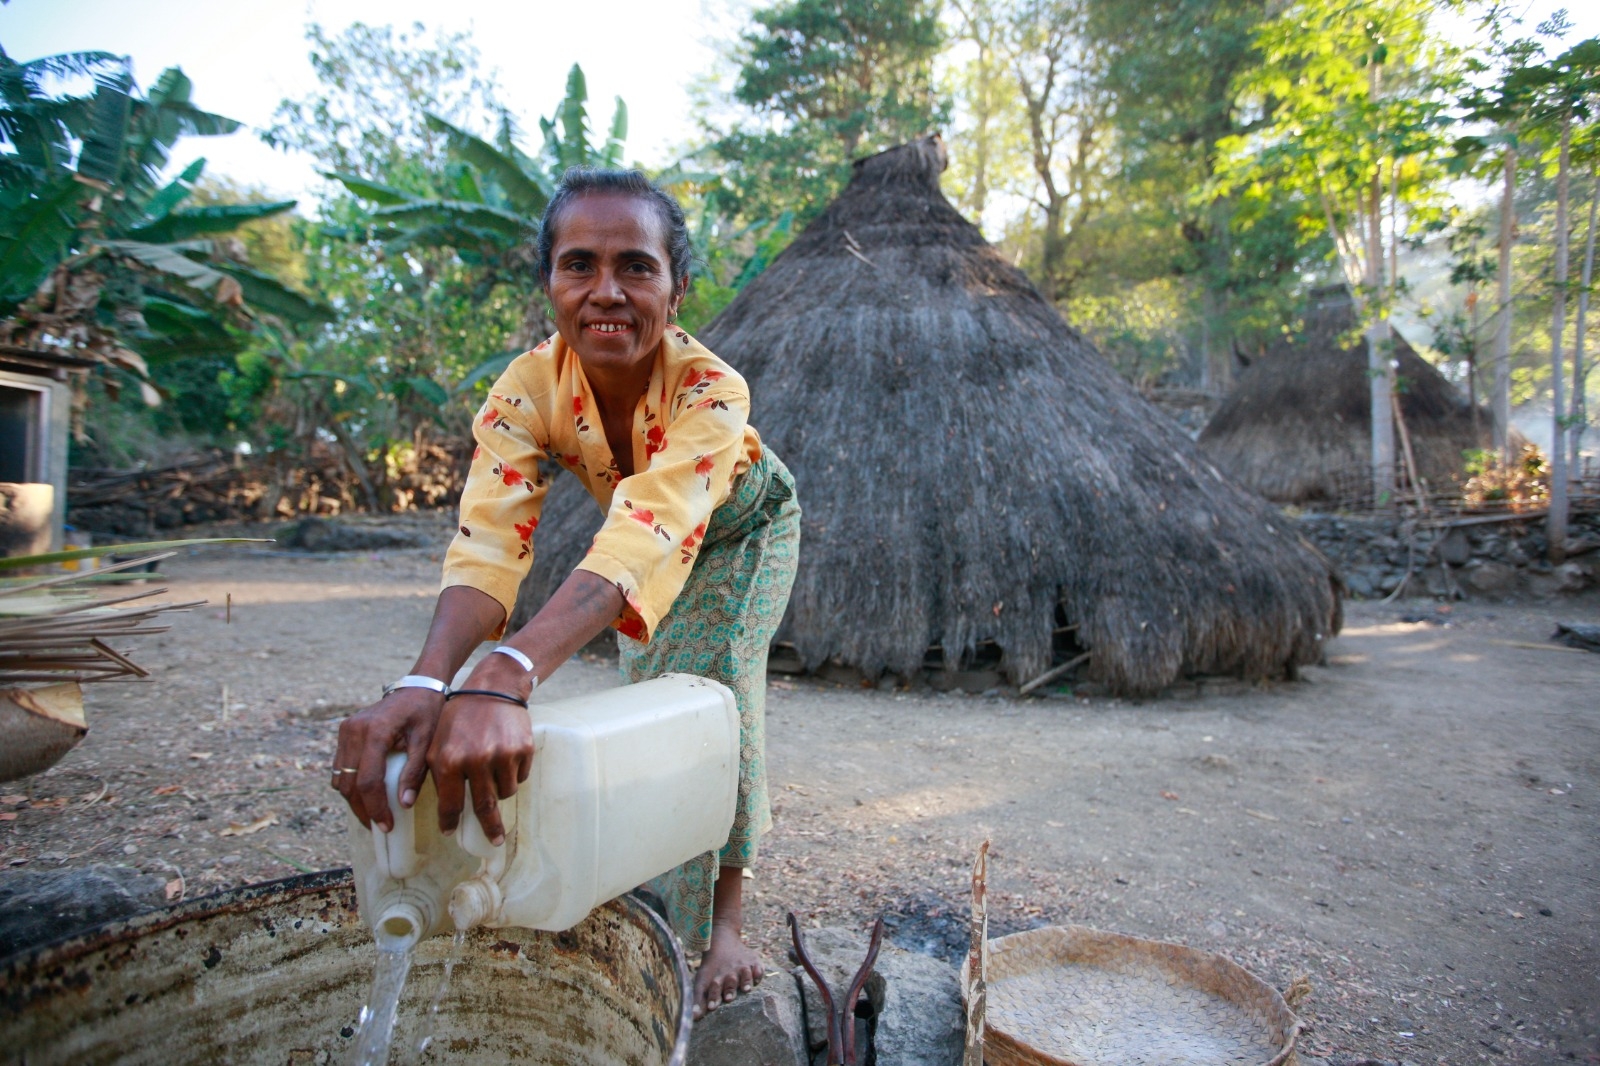 En kvinne henter vann utenfor huset sitt i Øst-Timor. Foto: UN Photo/Martine Perret